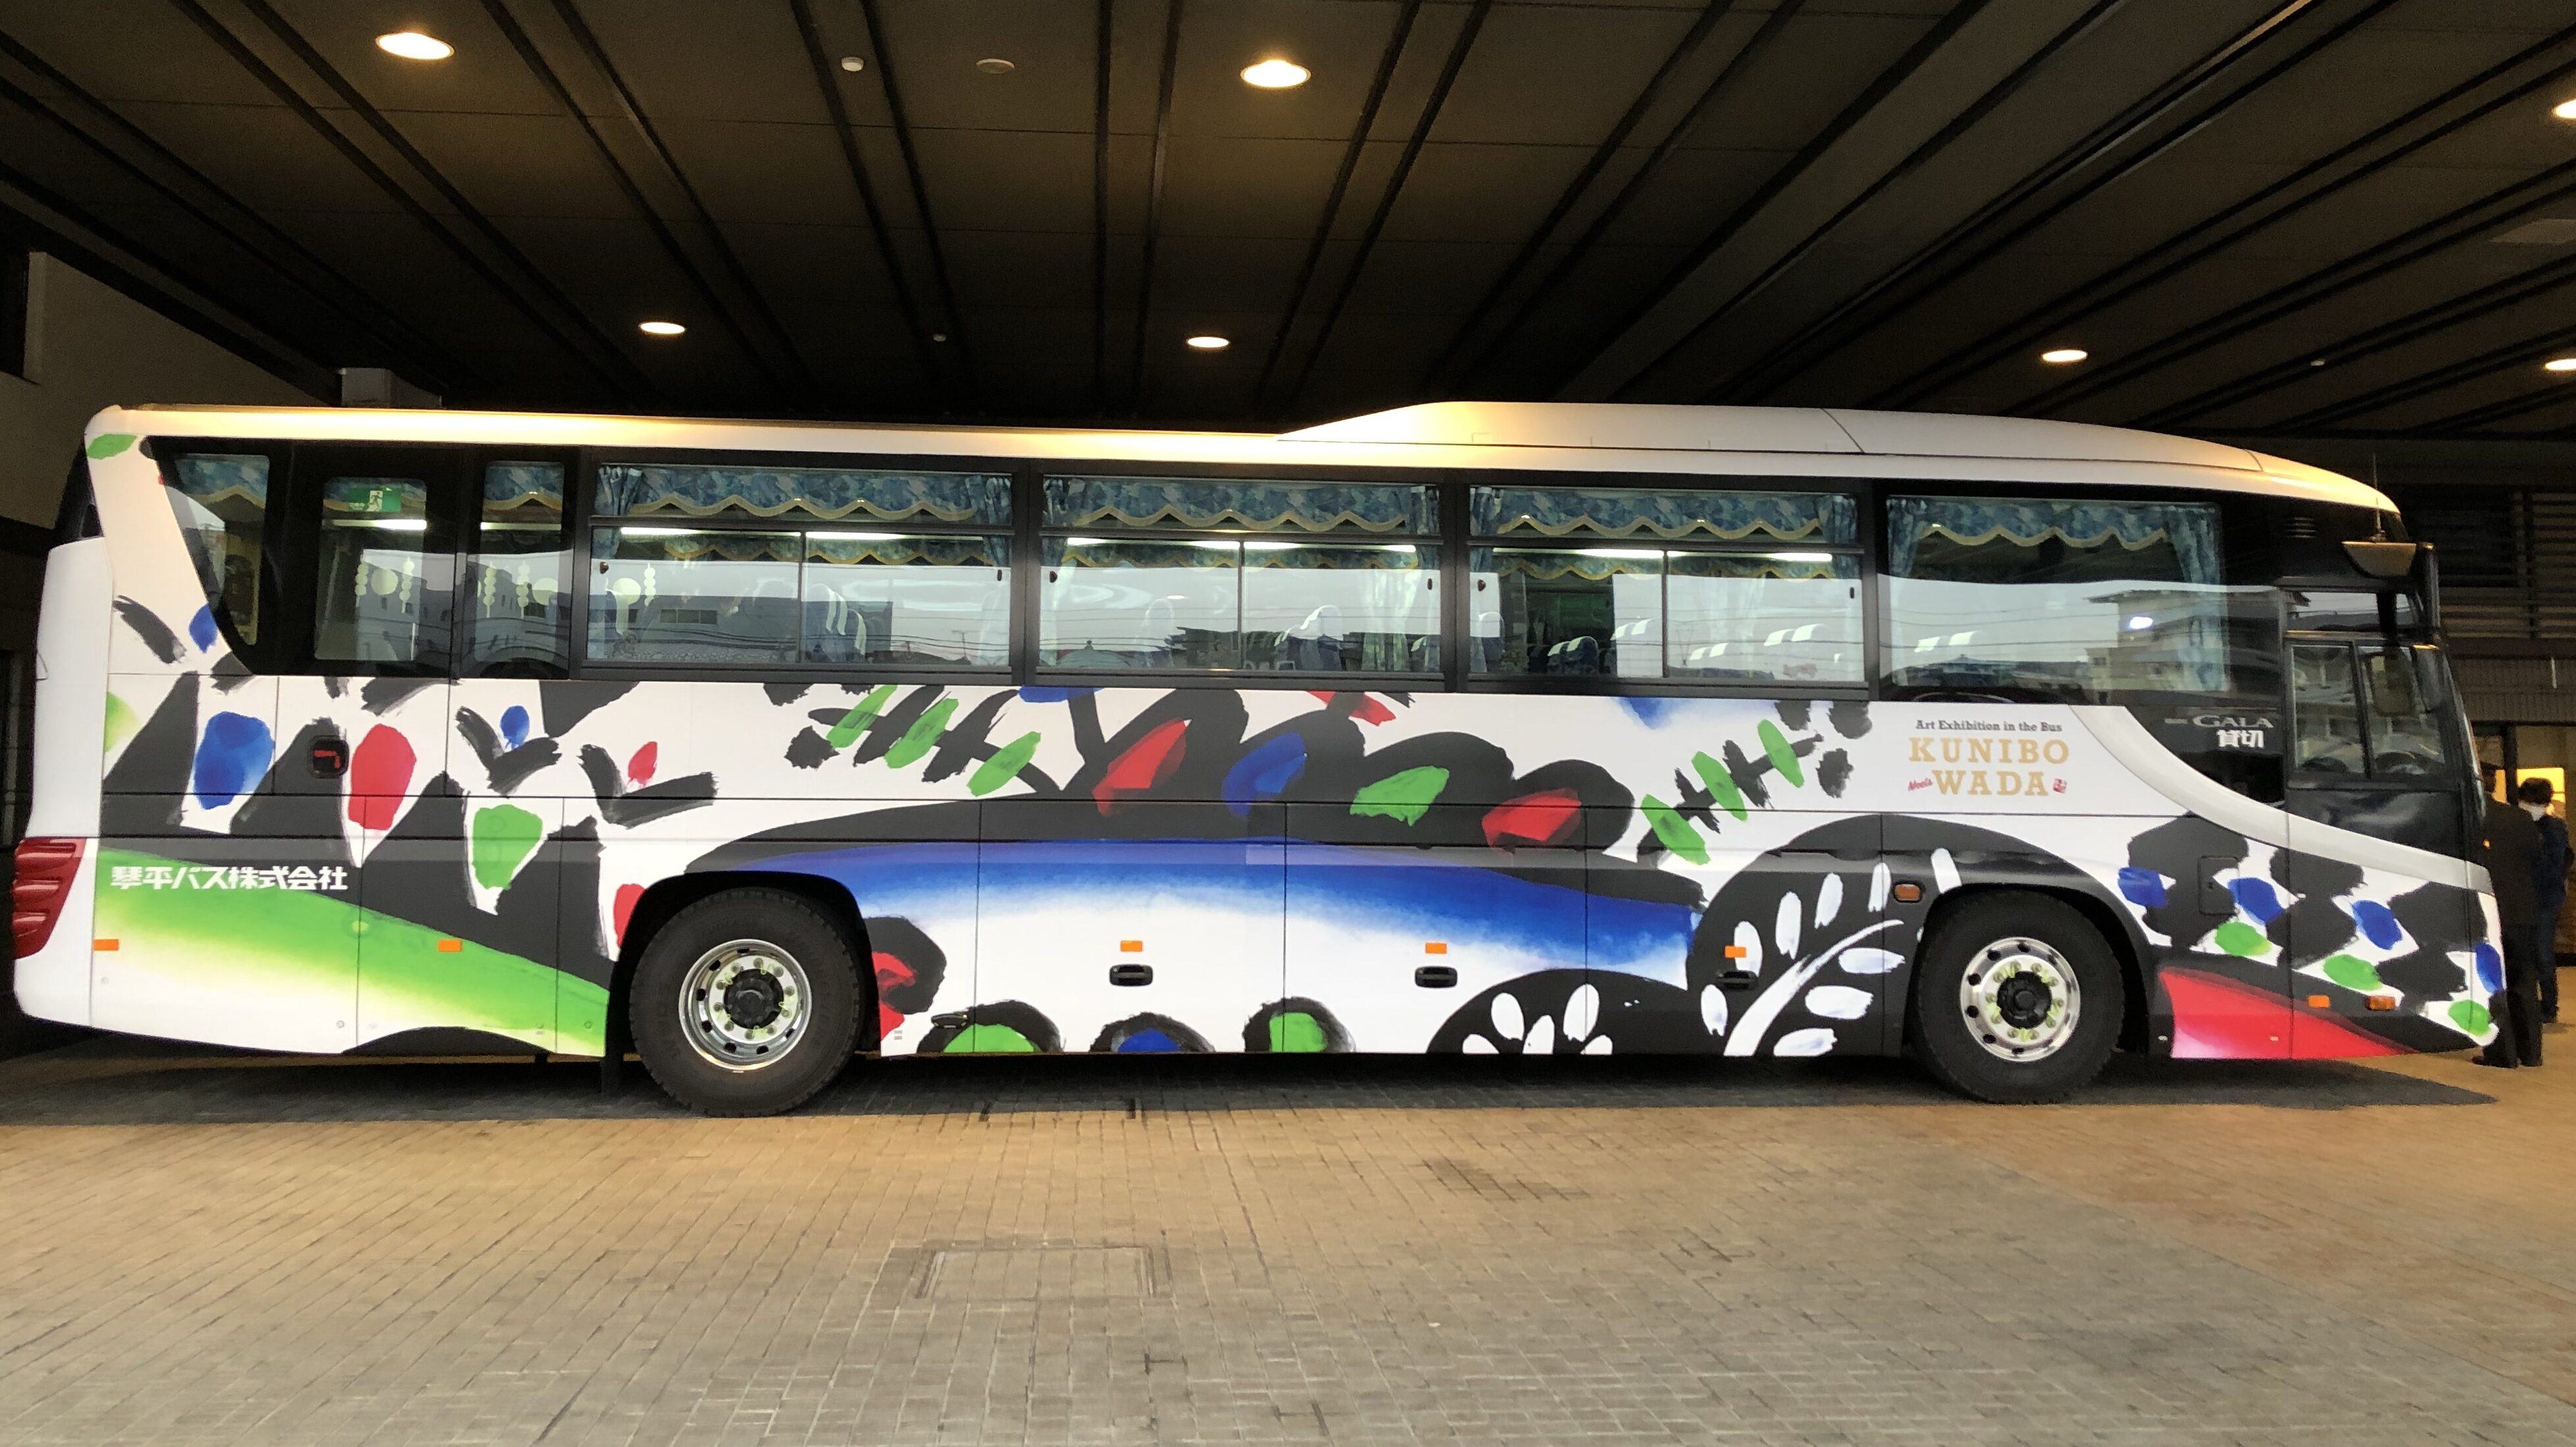 コトバスエクスプレス・Art Exhibition in the bus Meets KUNIBO WADA